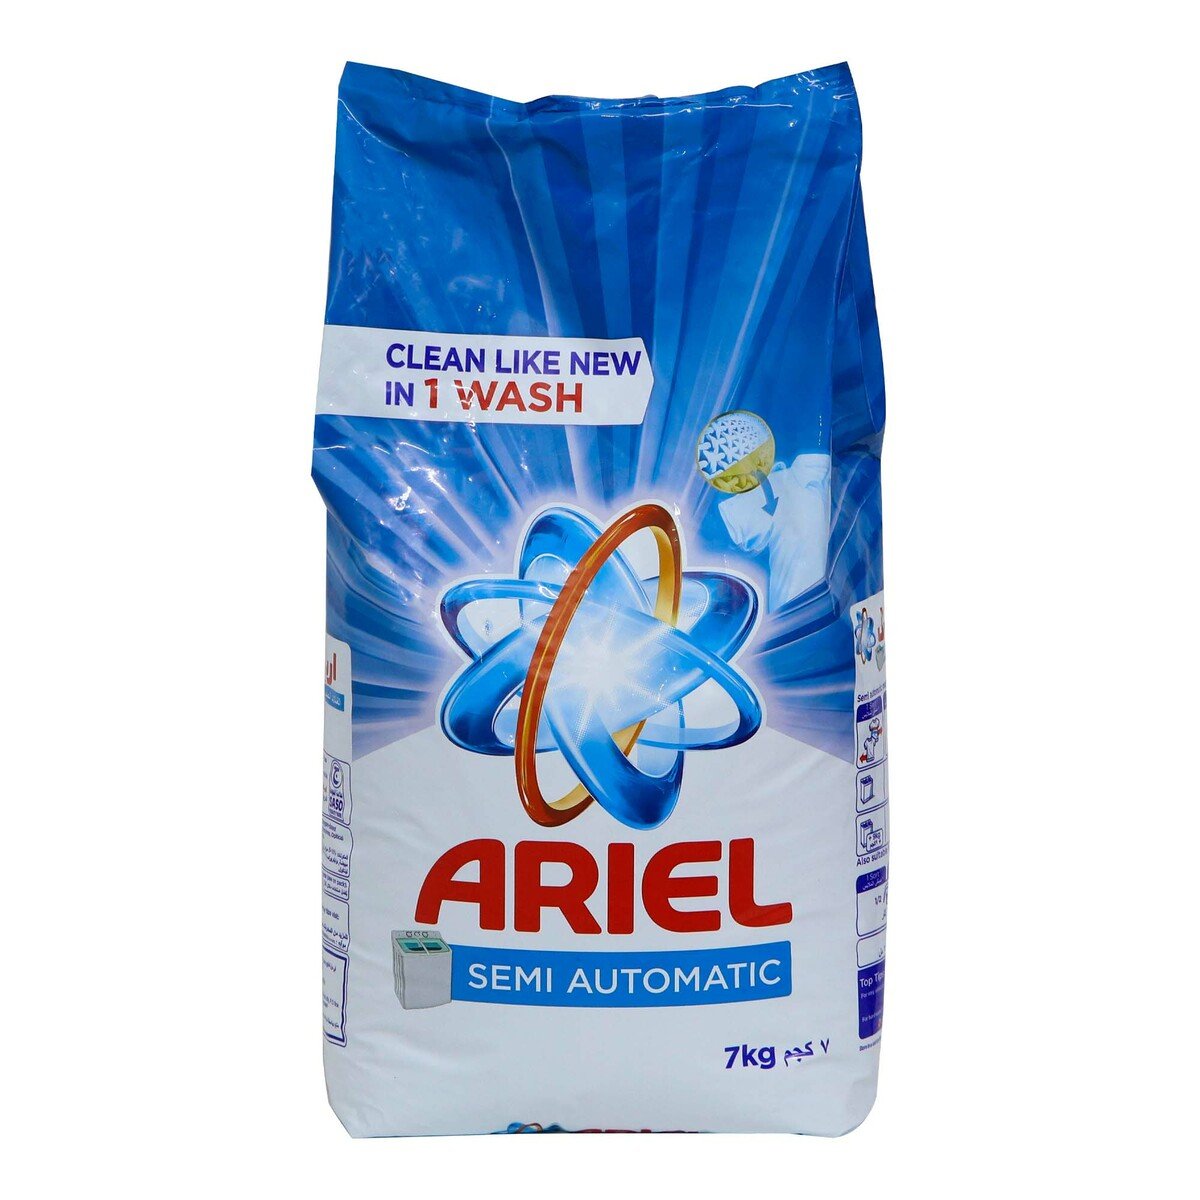 Ariel Semi Automatic Washing Powder Regular 7kg